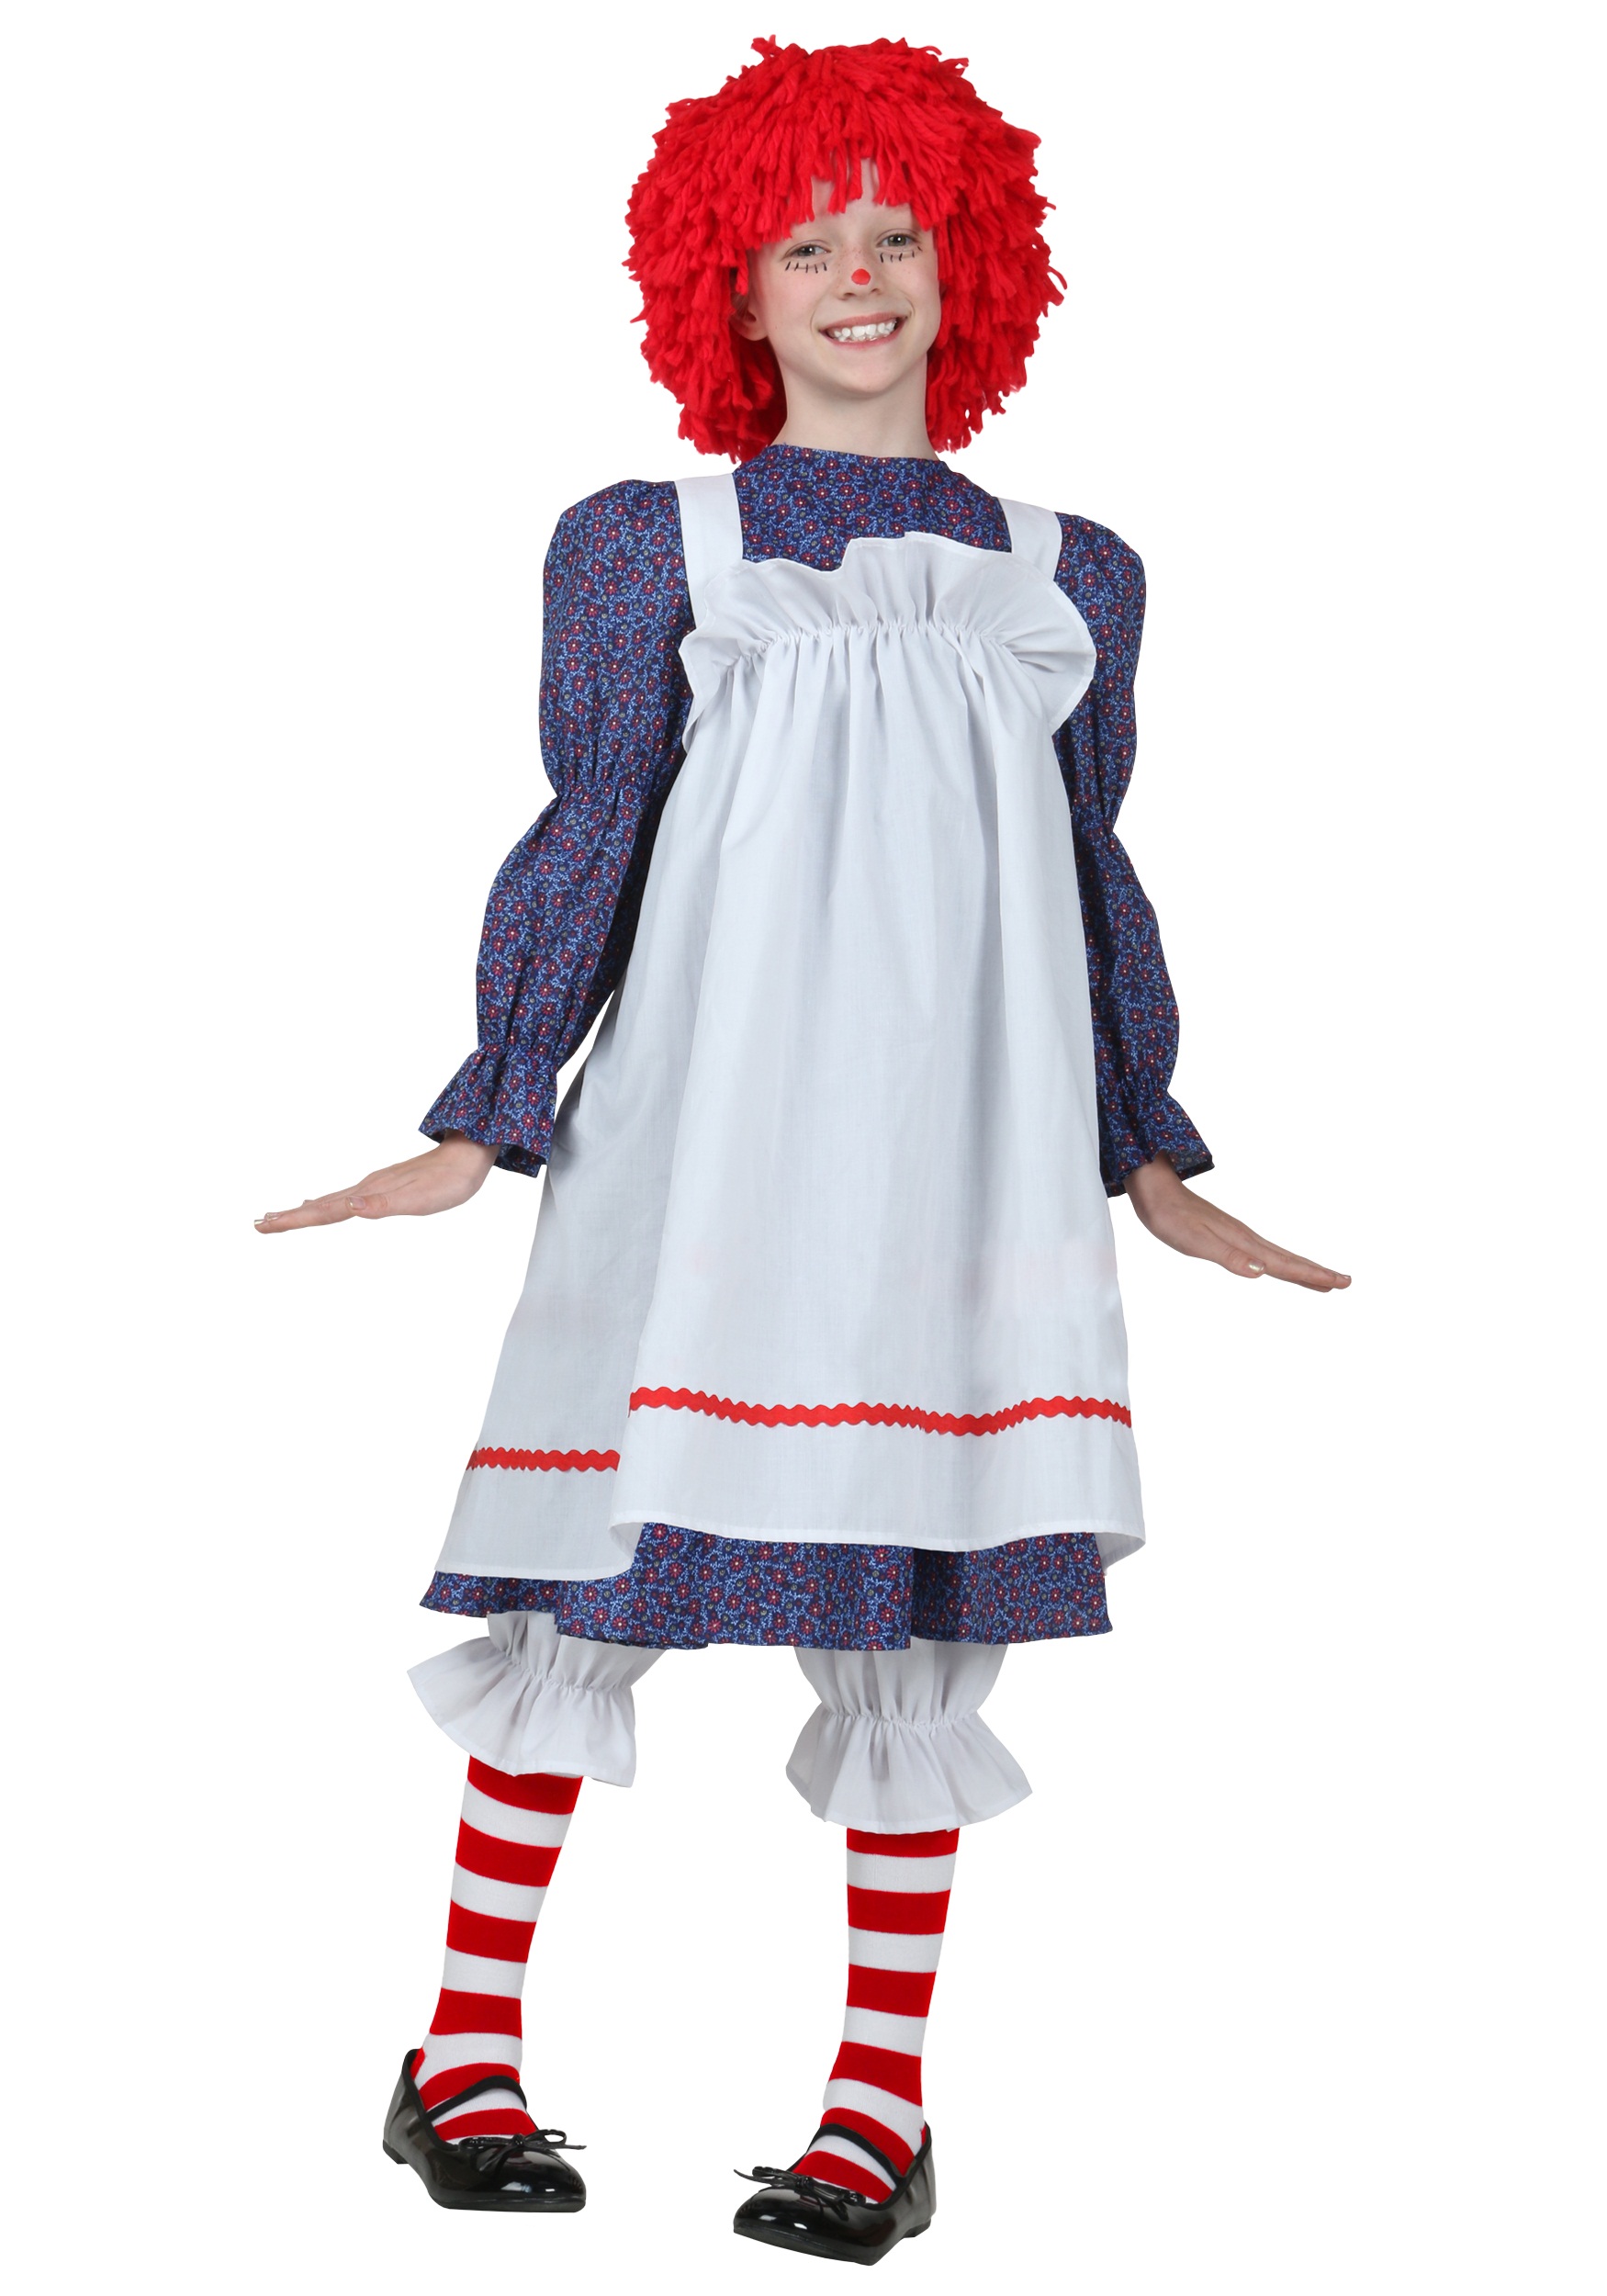 Rag Doll Costume For Kids